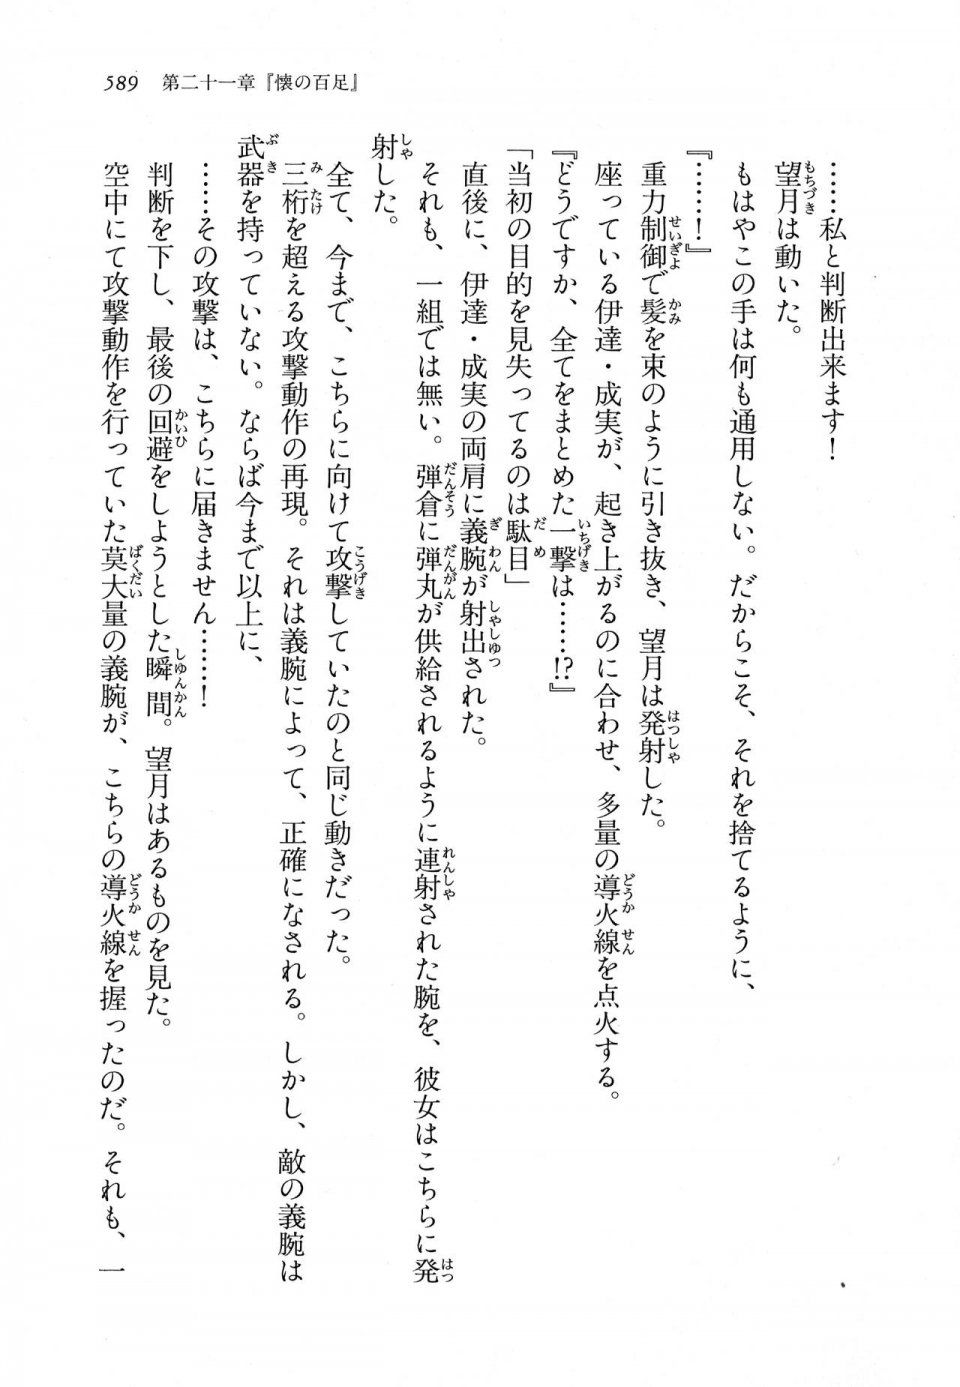 Kyoukai Senjou no Horizon LN Vol 11(5A) - Photo #589